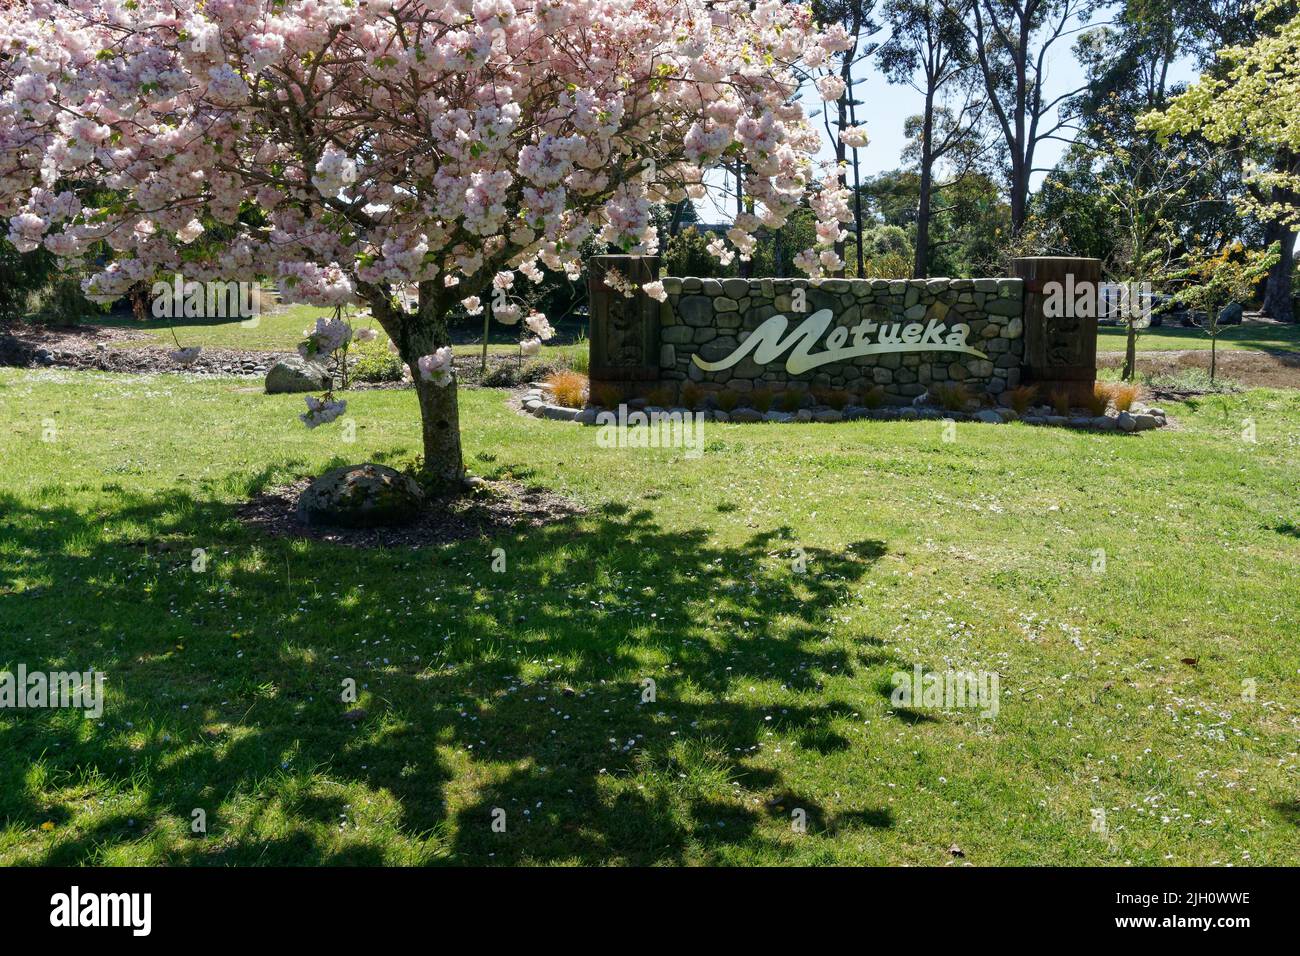 Signe de Motueka sous la fleur de printemps, Motueka, région de Tasman, île du sud, Aotearoa / Nouvelle-Zélande Banque D'Images